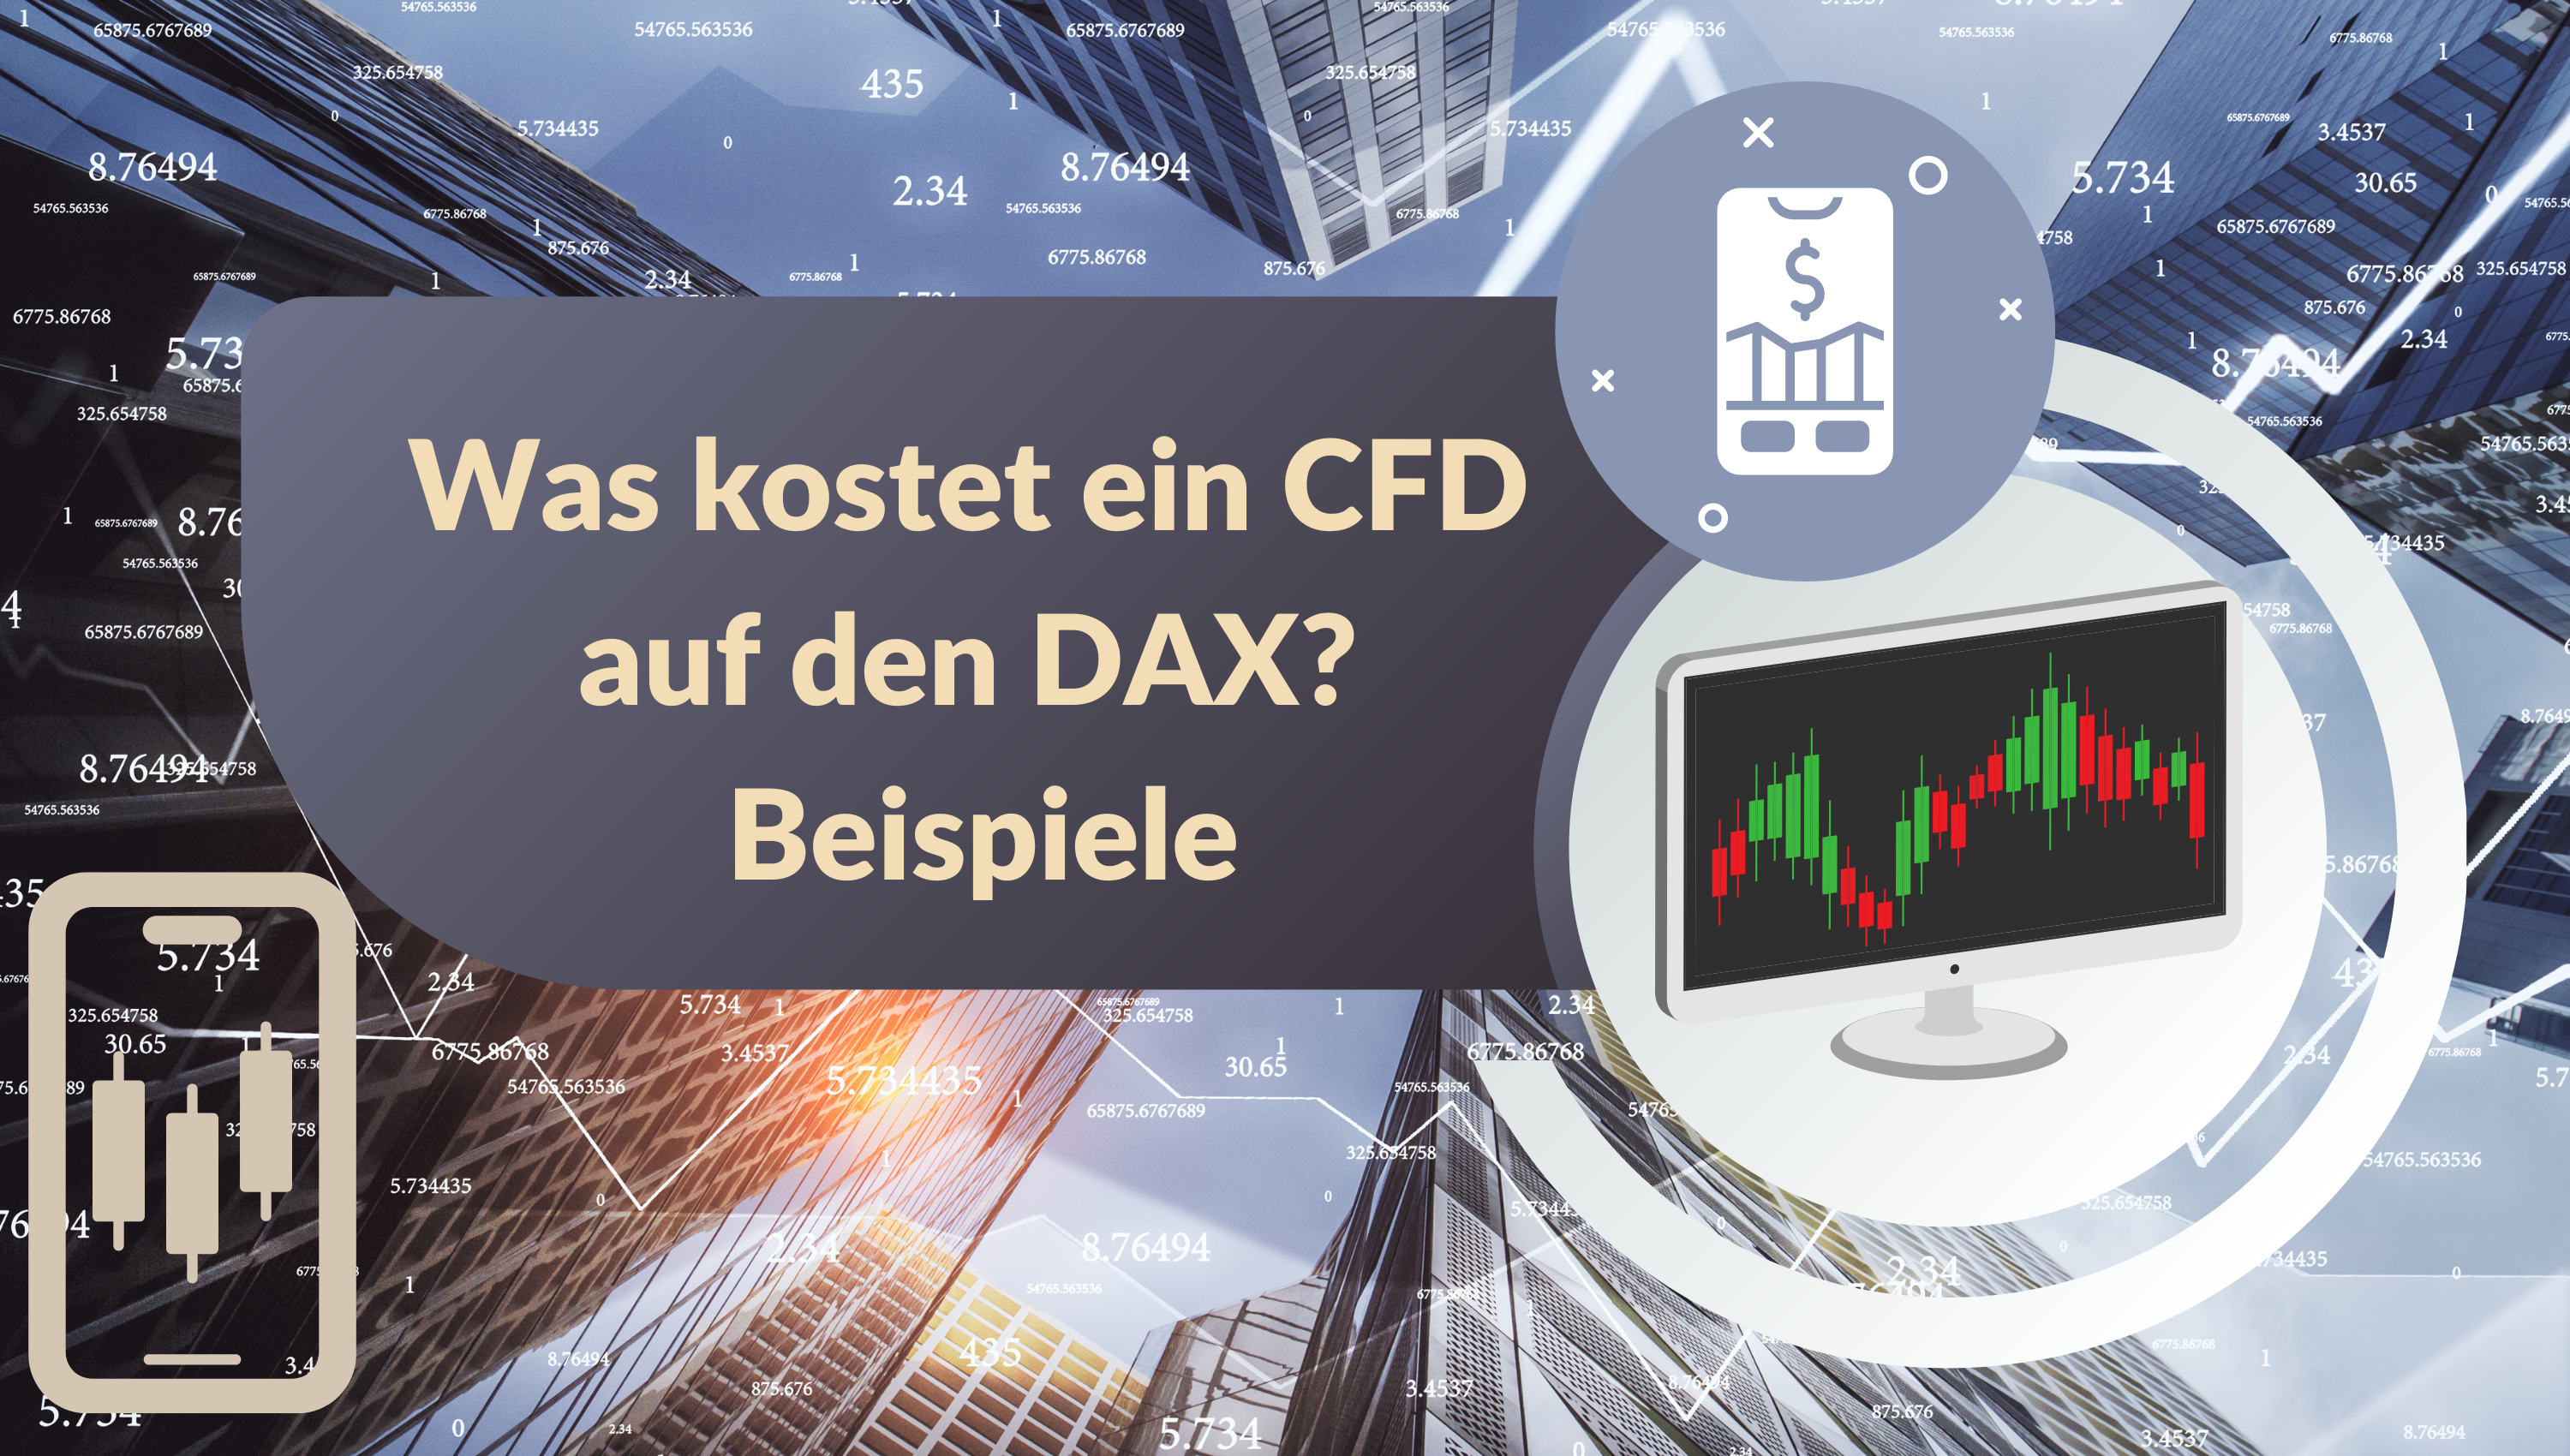 Was kostet ein CFD auf den DAX - Beispiele